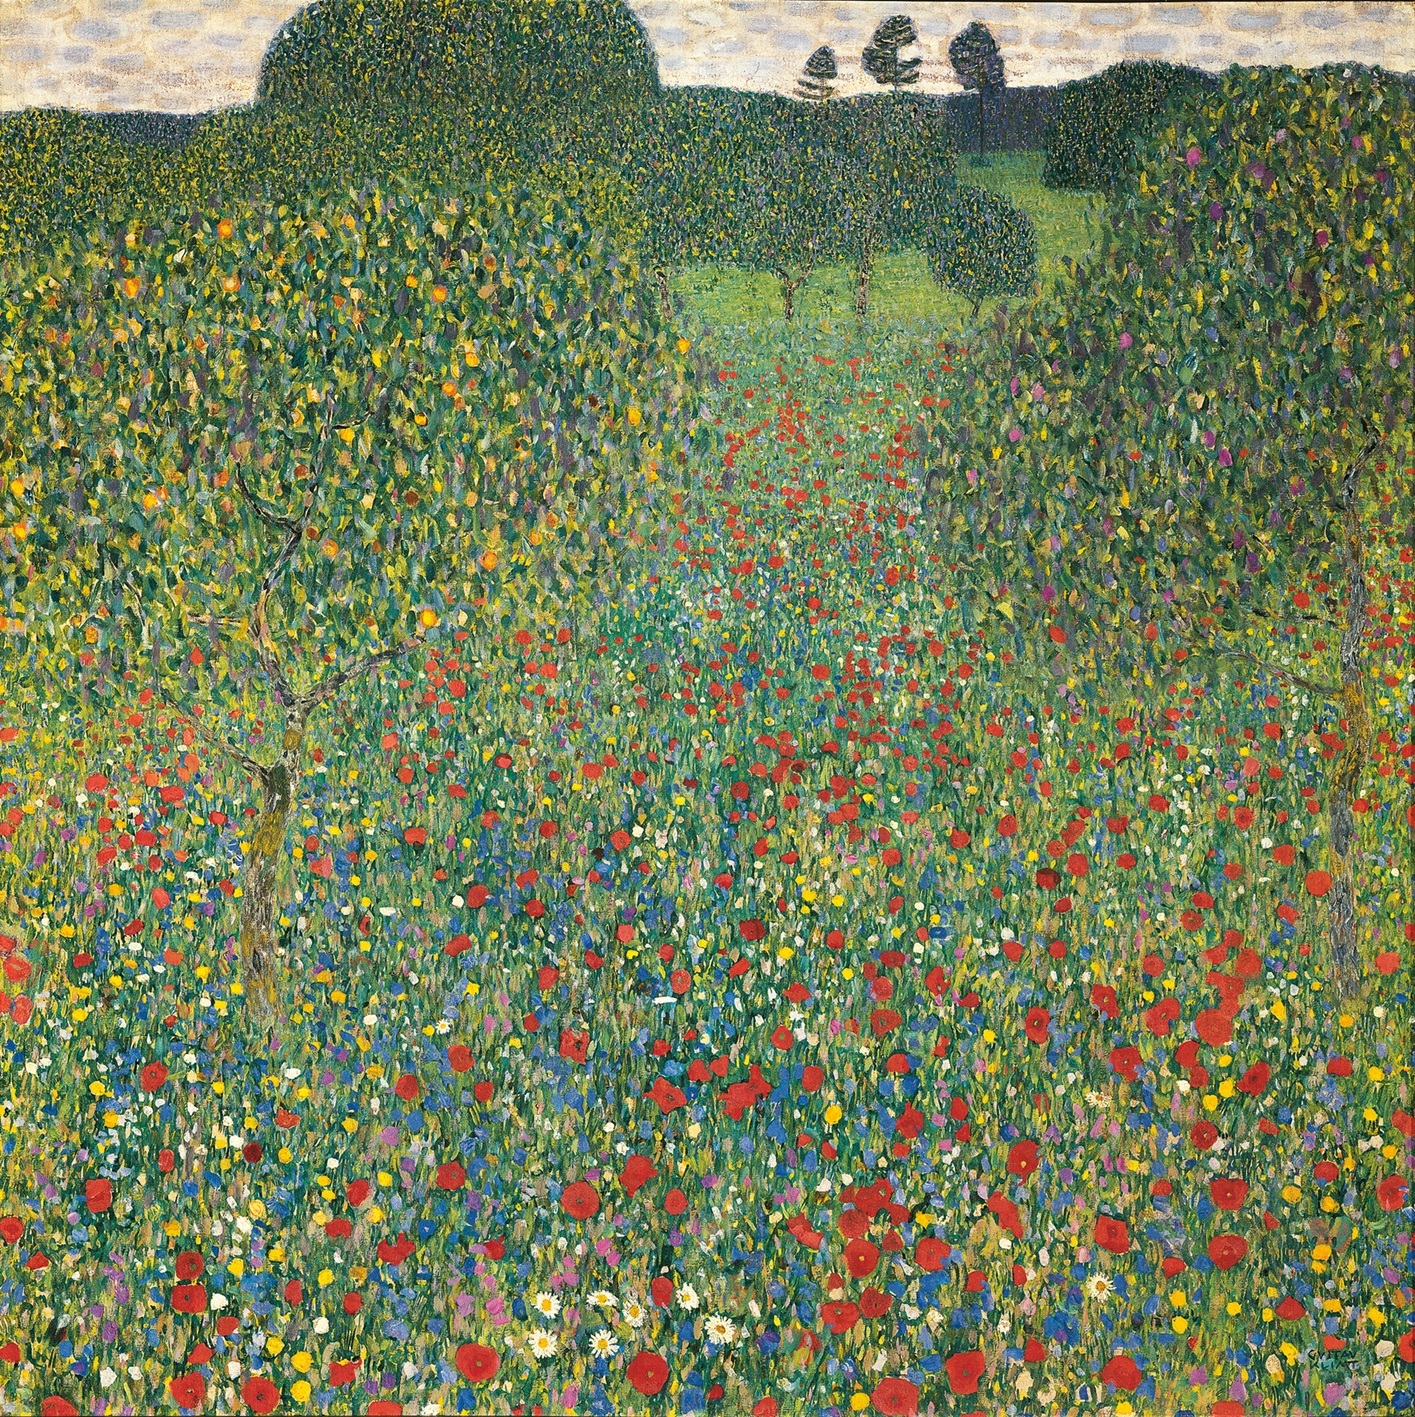 Comienza la primavera. Campo de amapolas, Gustav Klimt, 1907